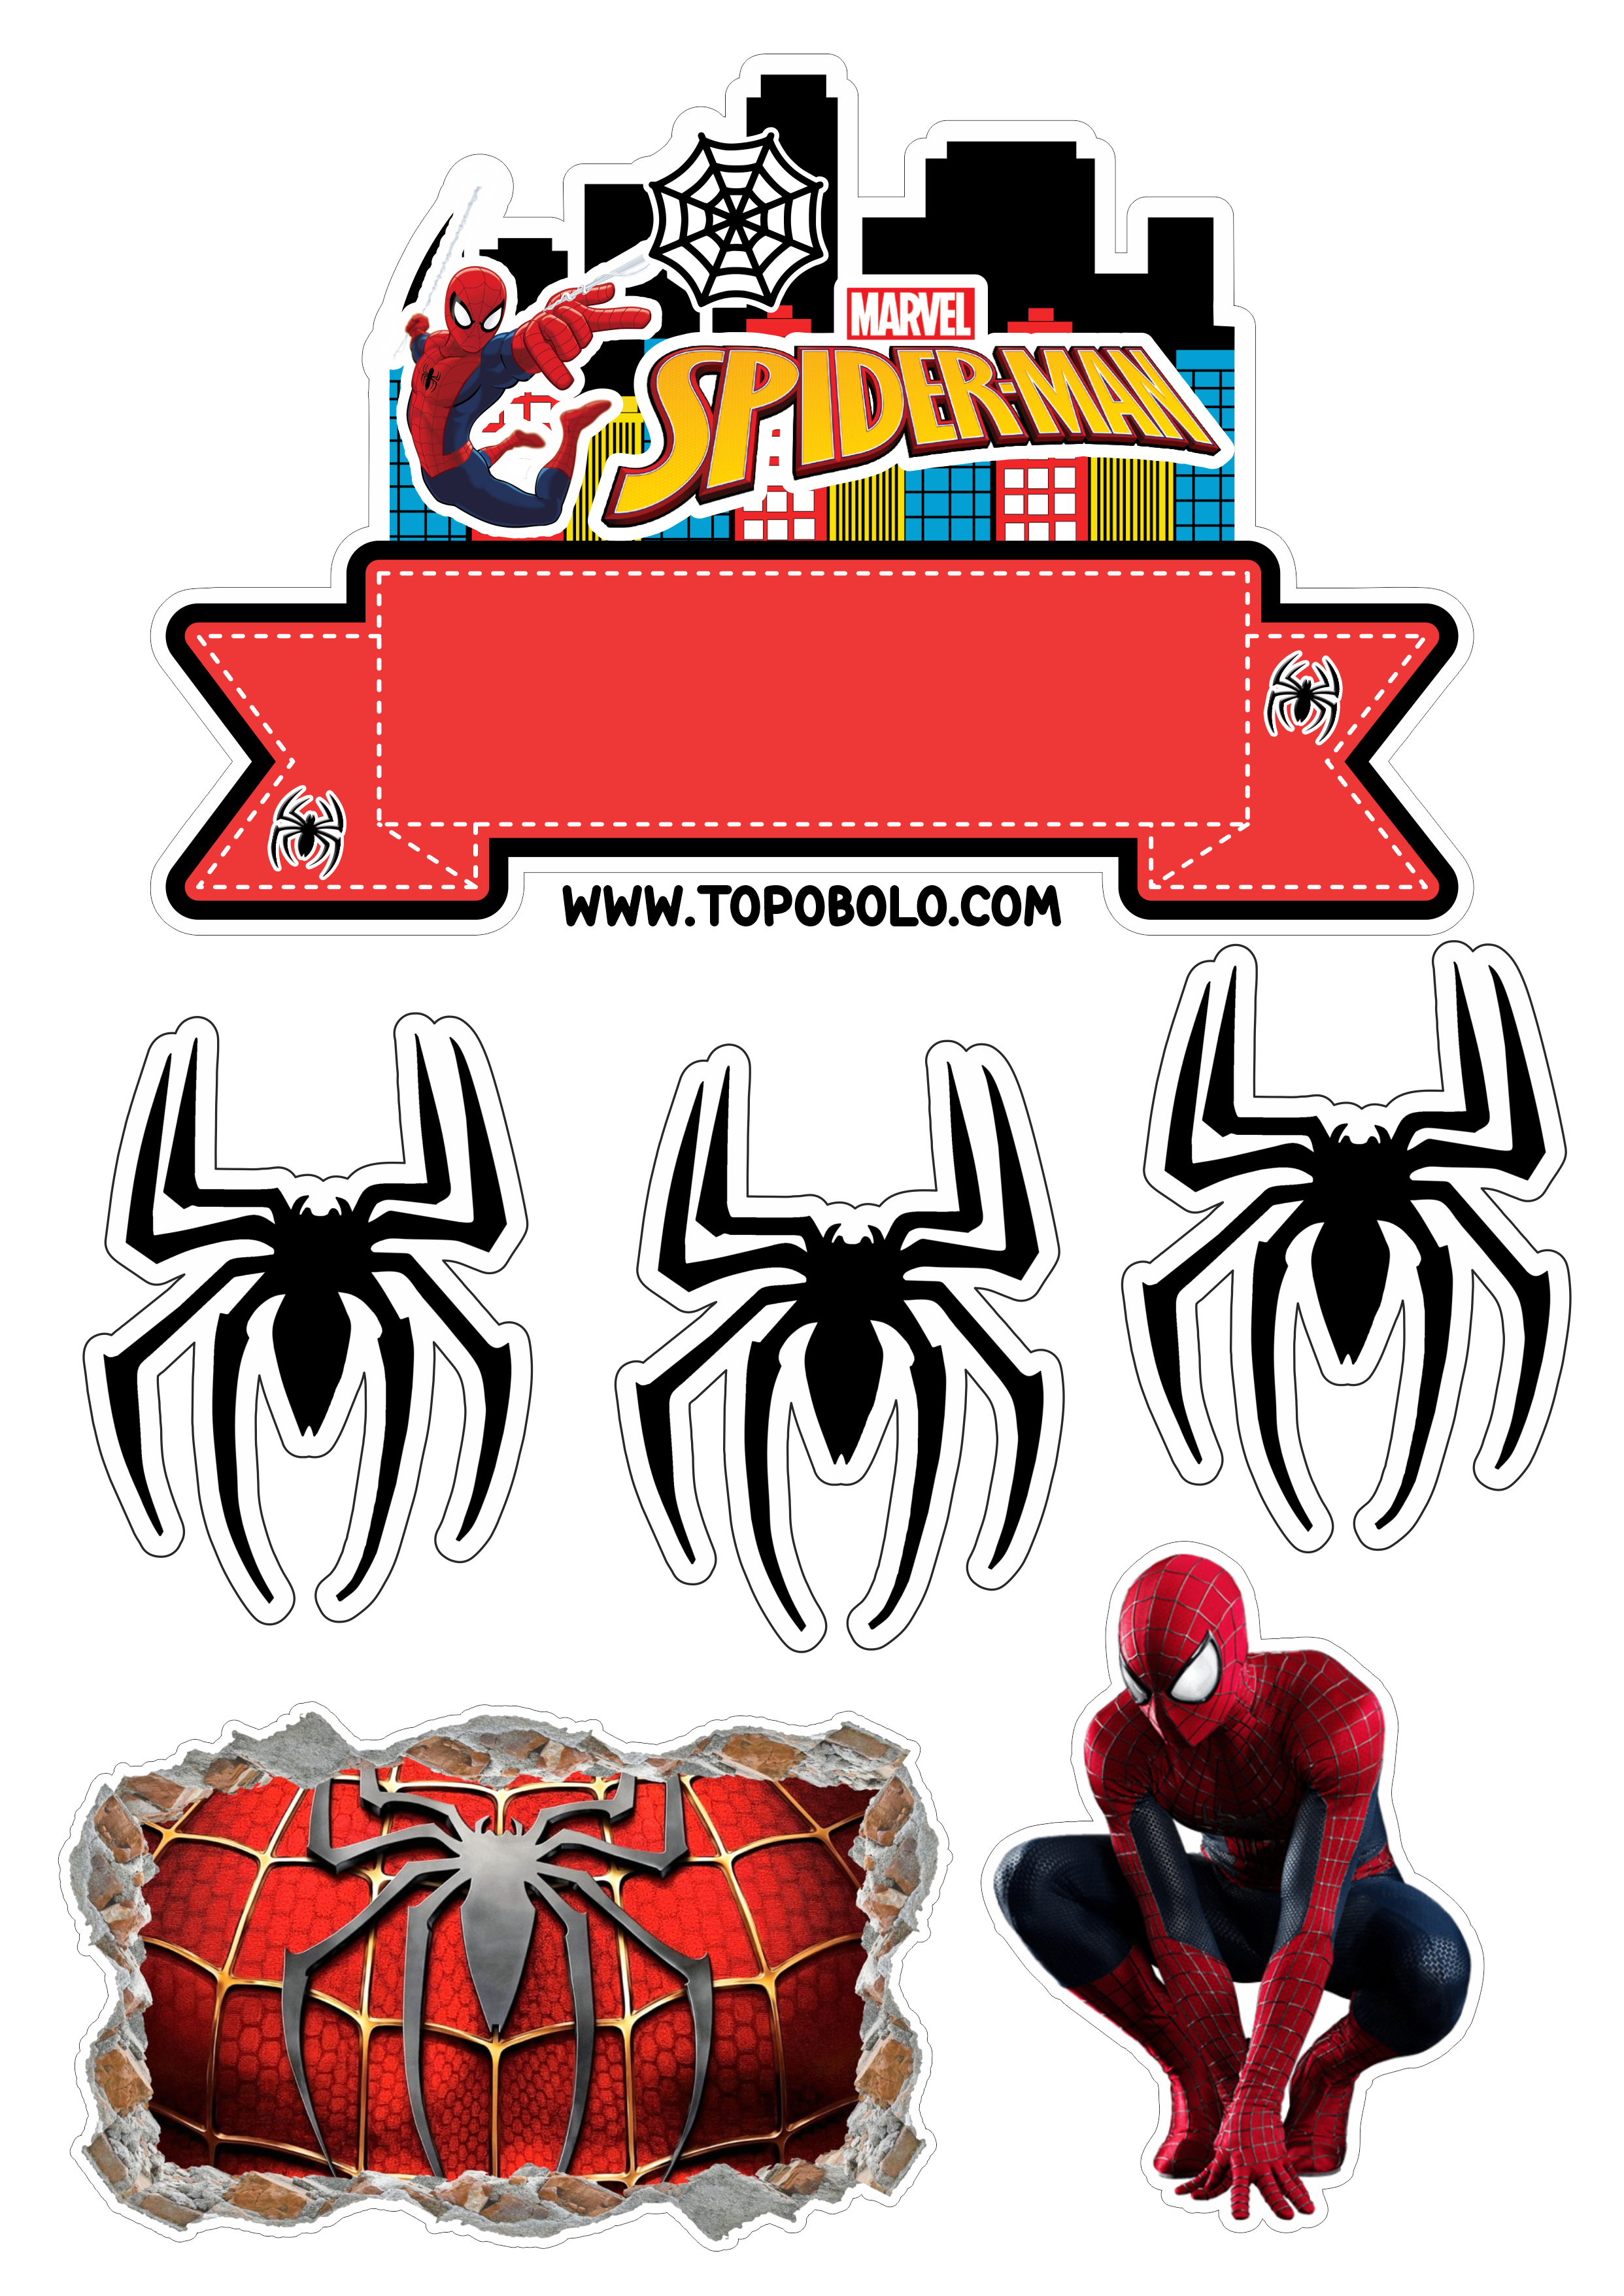 Topo de bolo para imprimir Homem-Aranha aniversário infantil Spider-Man renda extra com papelaria png